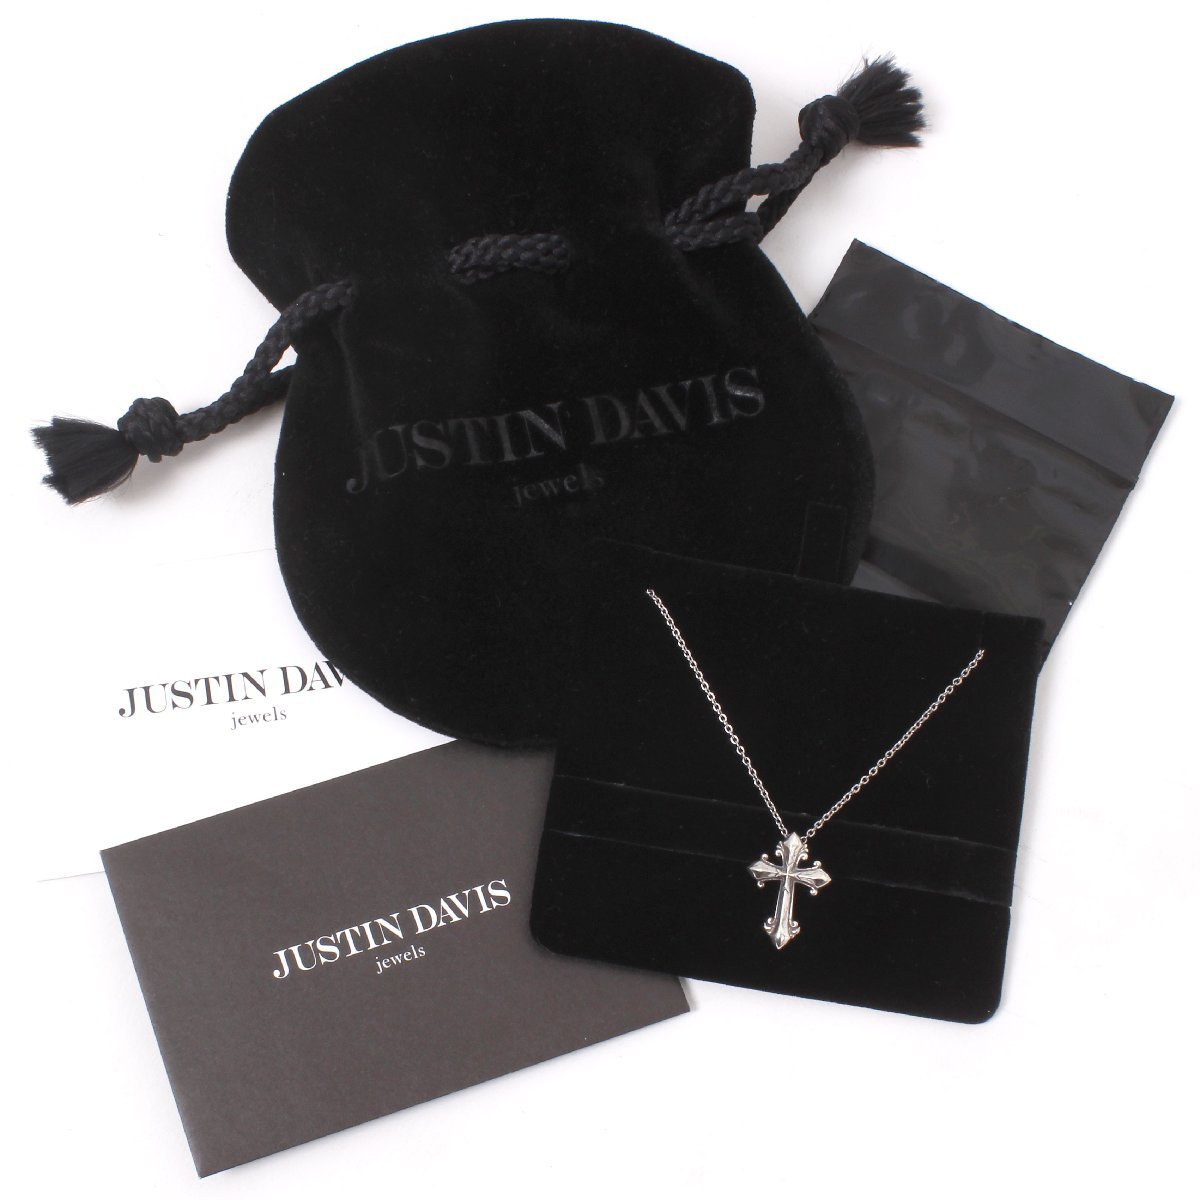 【新品・未使用】JUSTIN DAVIS Saint DAVIS Necklace 定価25,300円 BLACKENED size50cm SNJ807 ジャスティン デイビス クロスネックレス